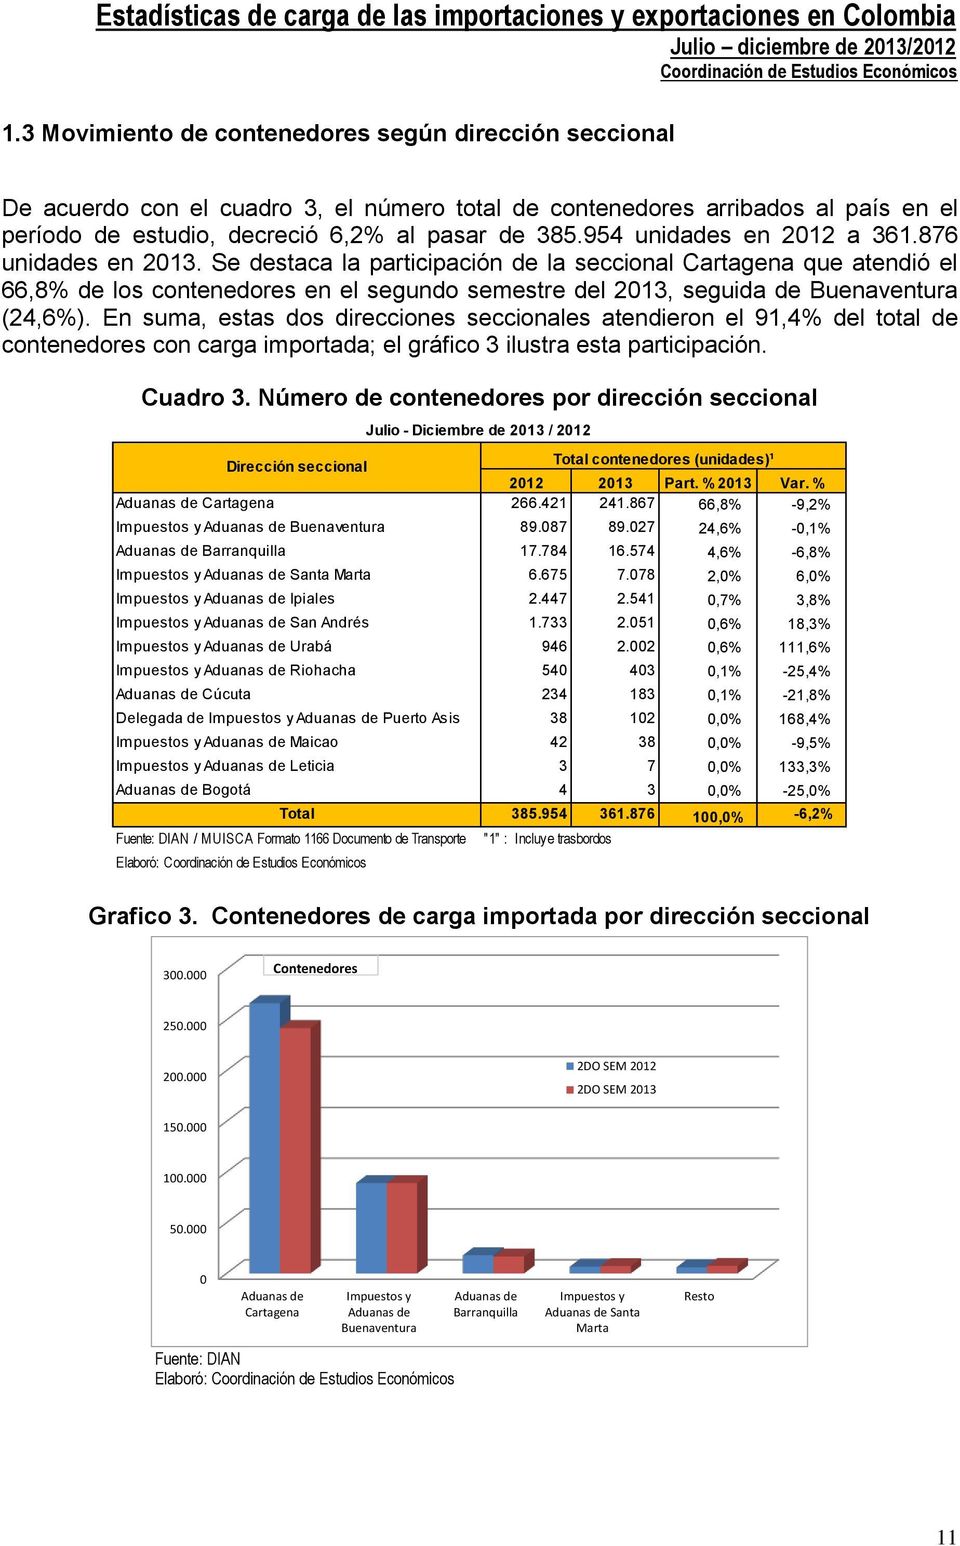 Se destaca la participación de la seccional Cartagena que atendió el 66,8% de los contenedores en el segundo semestre del 2013, seguida de Buenaventura (24,6%).